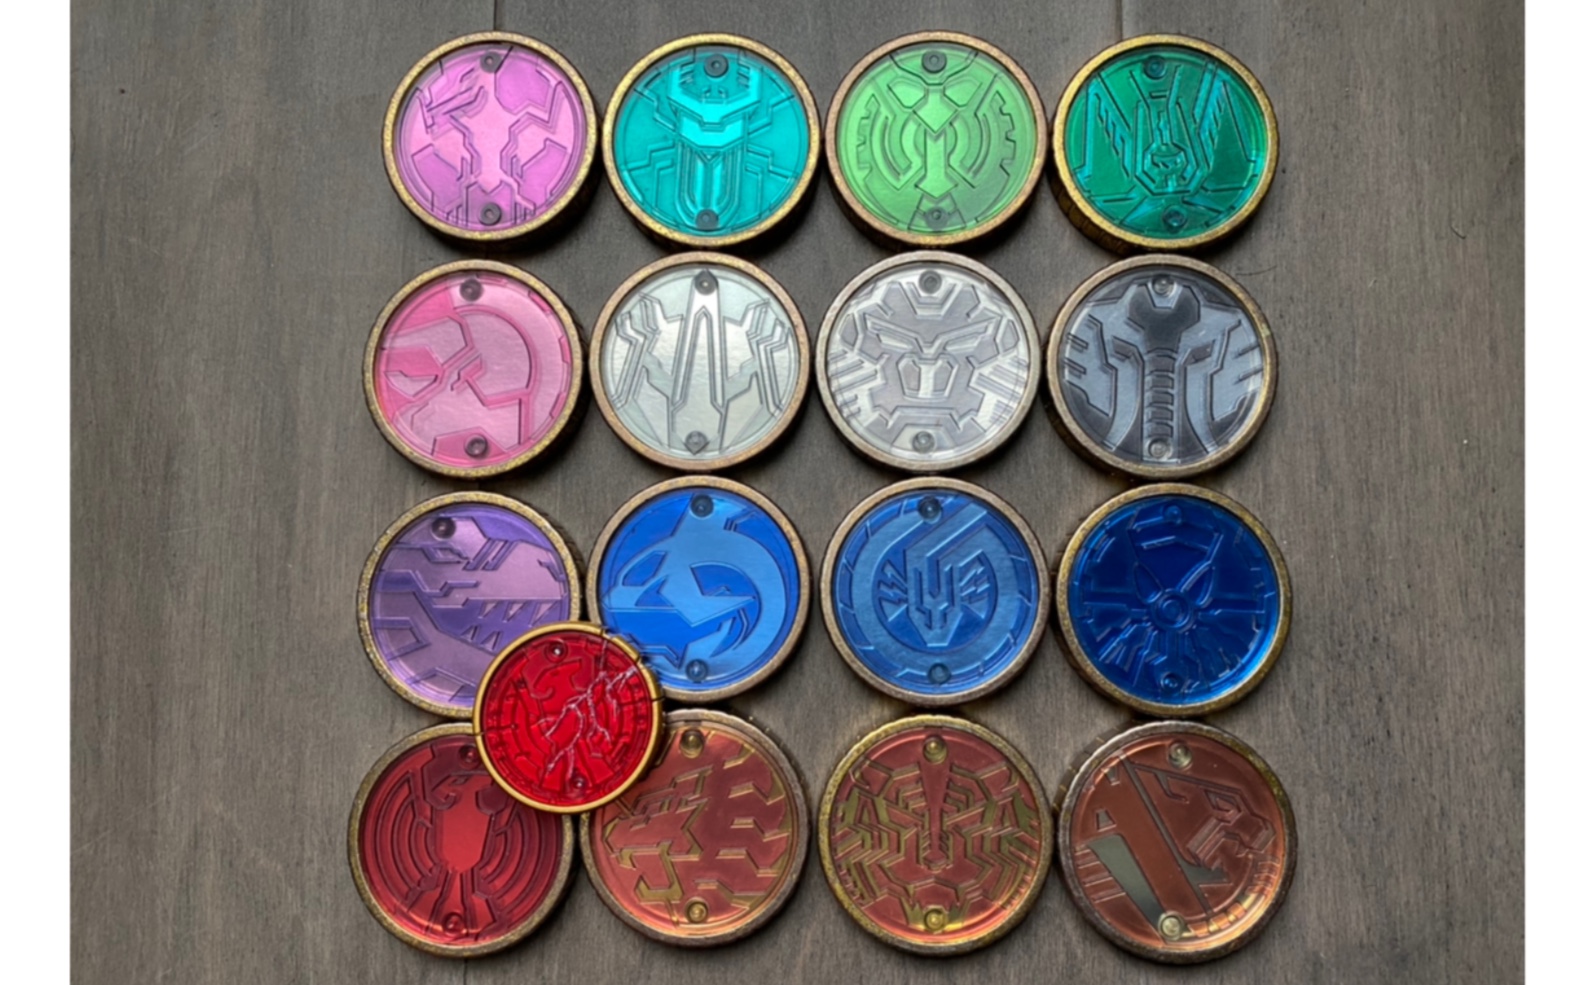 假面骑士ooo 1比1道具级收藏硬币评测 皮套大小 只能用来看的硬币